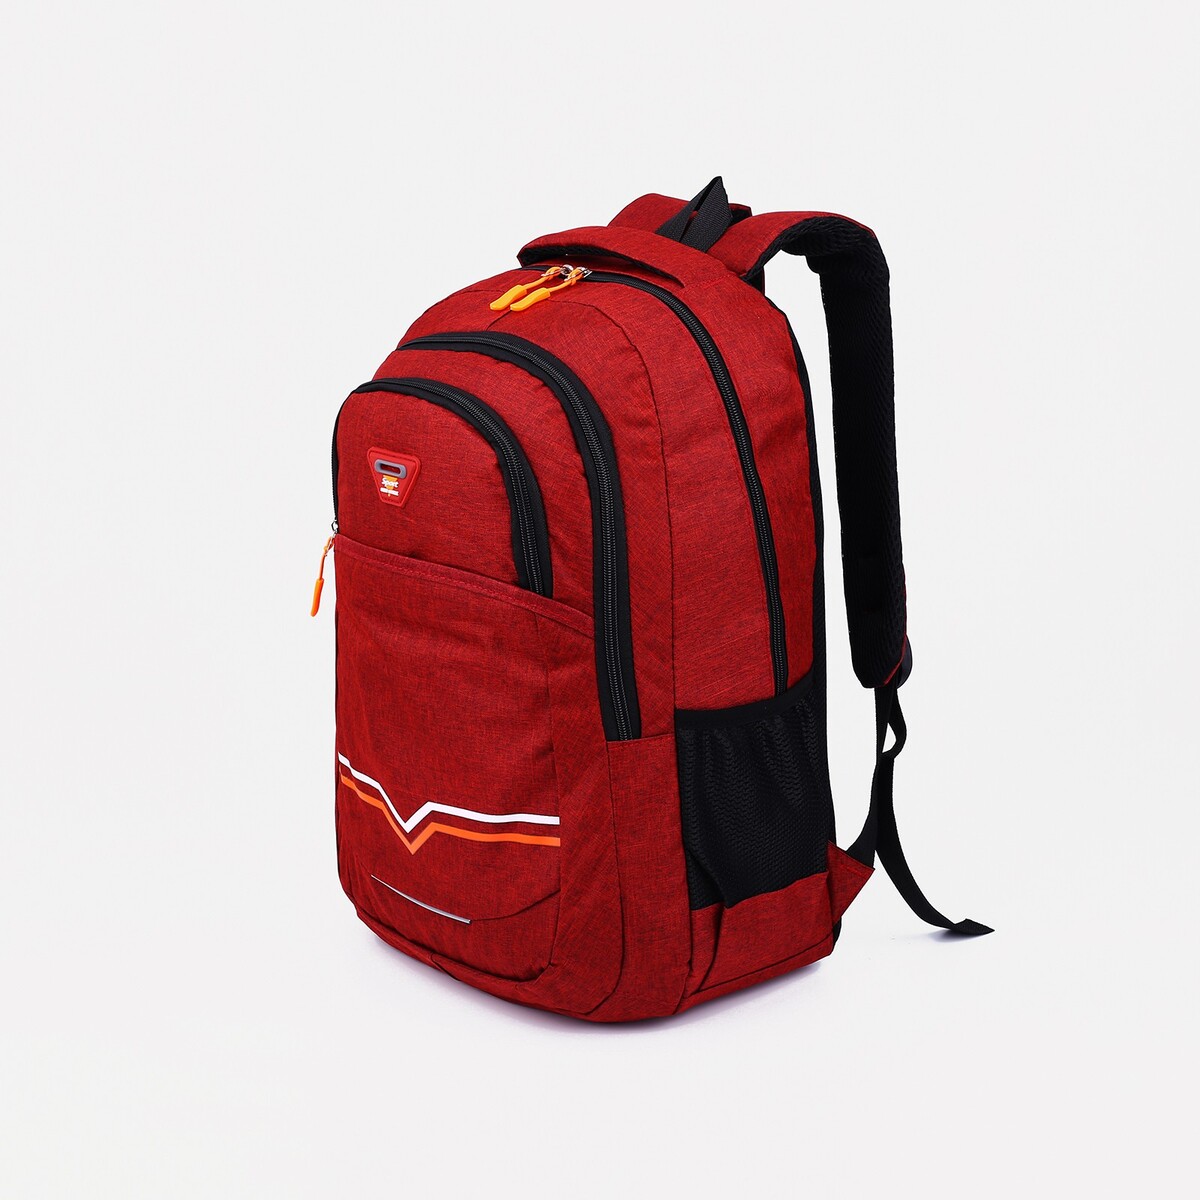 Рюкзак на молнии, 2 наружных кармана, цвет бордовый рюкзак на молнии 2 наружных кармана бордовый